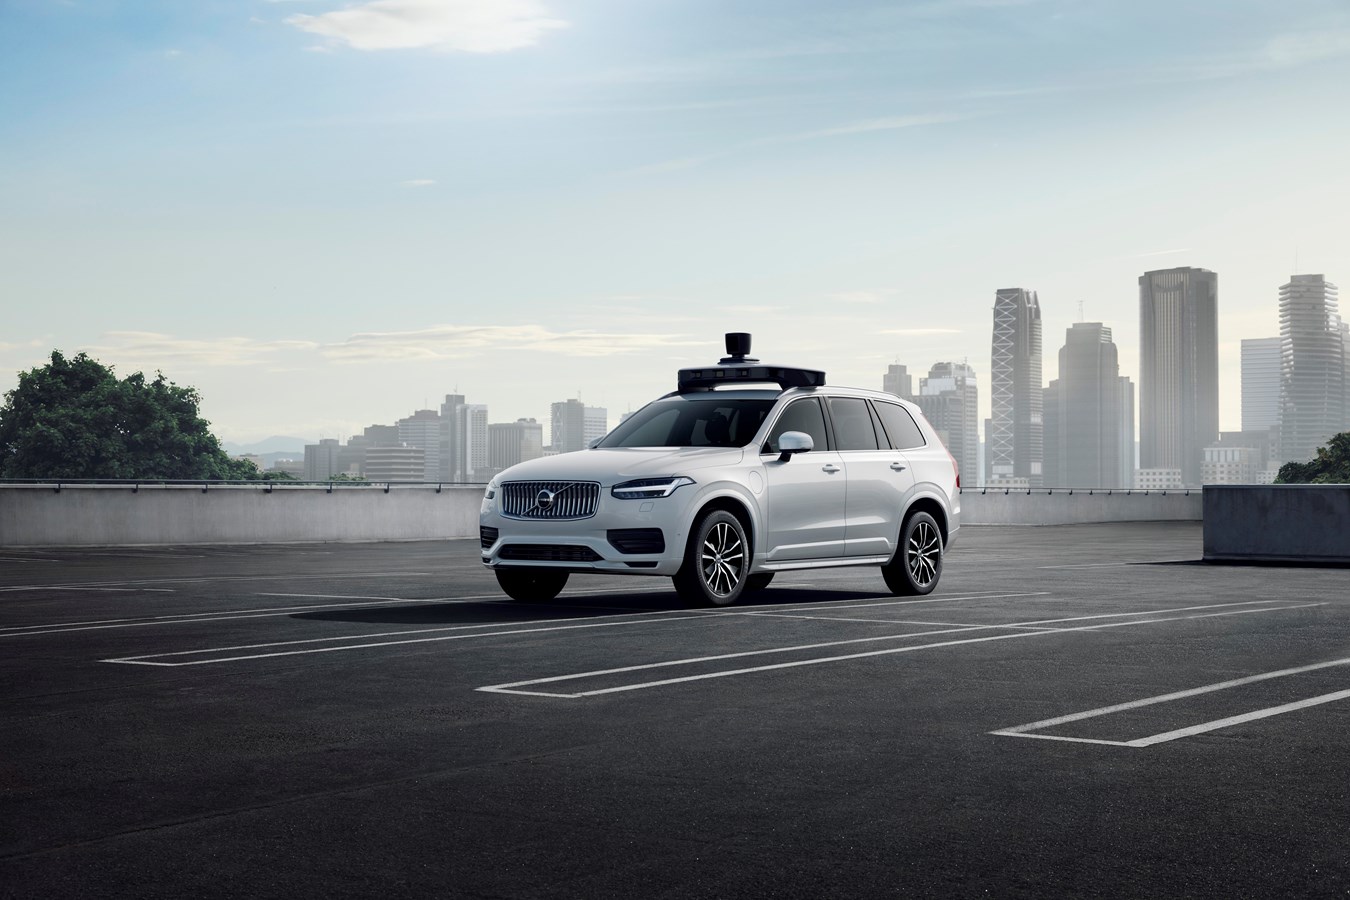 Volvo und Uber präsentieren selbstfahrendes Auto 